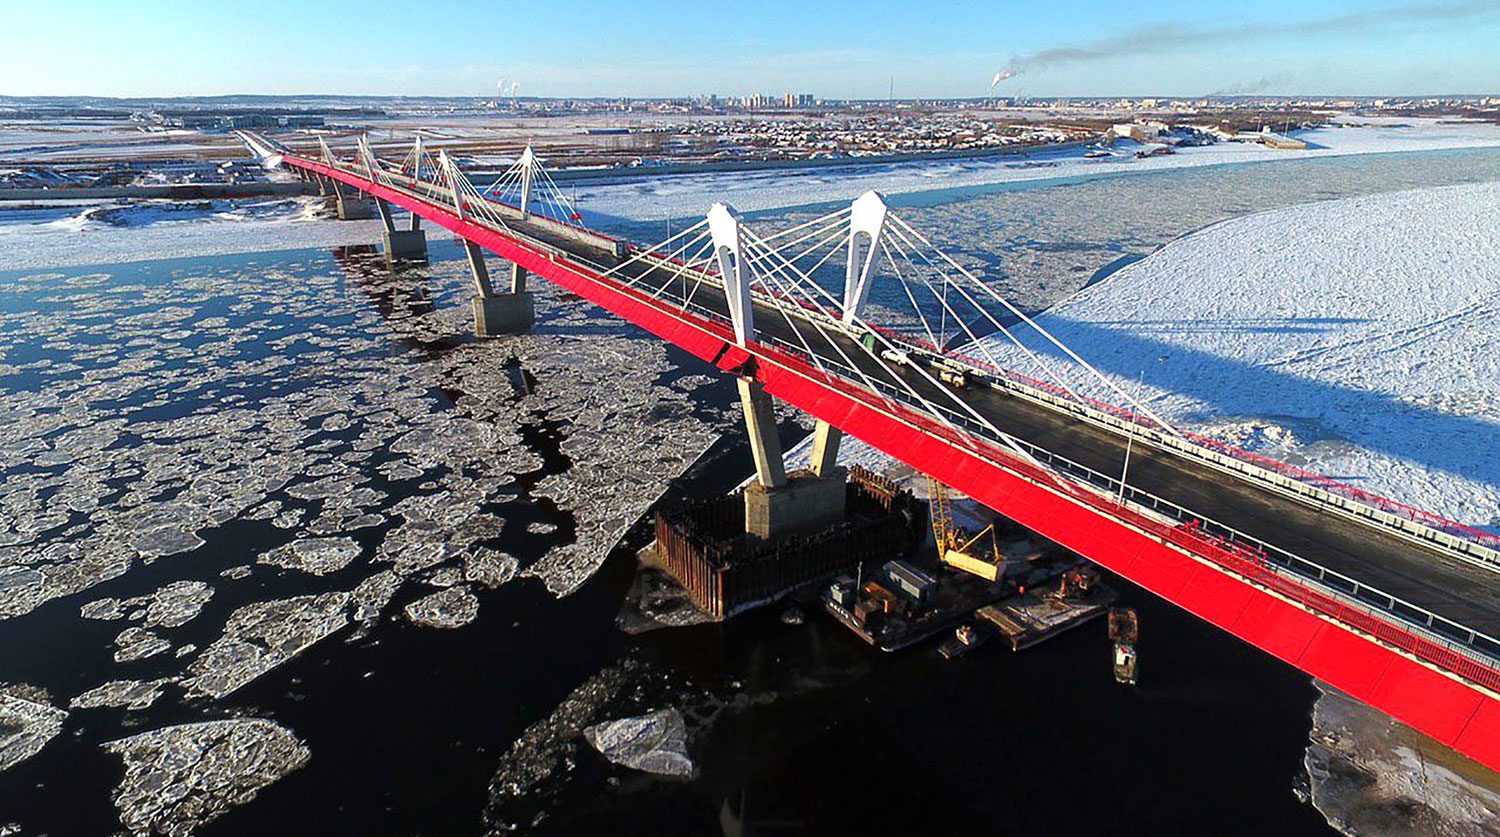 เสร็จสมบูรณ์แล้ว สะพานข้ามพรมแดน “รัสเซีย-จีน” สายแรก - ข่าวสด